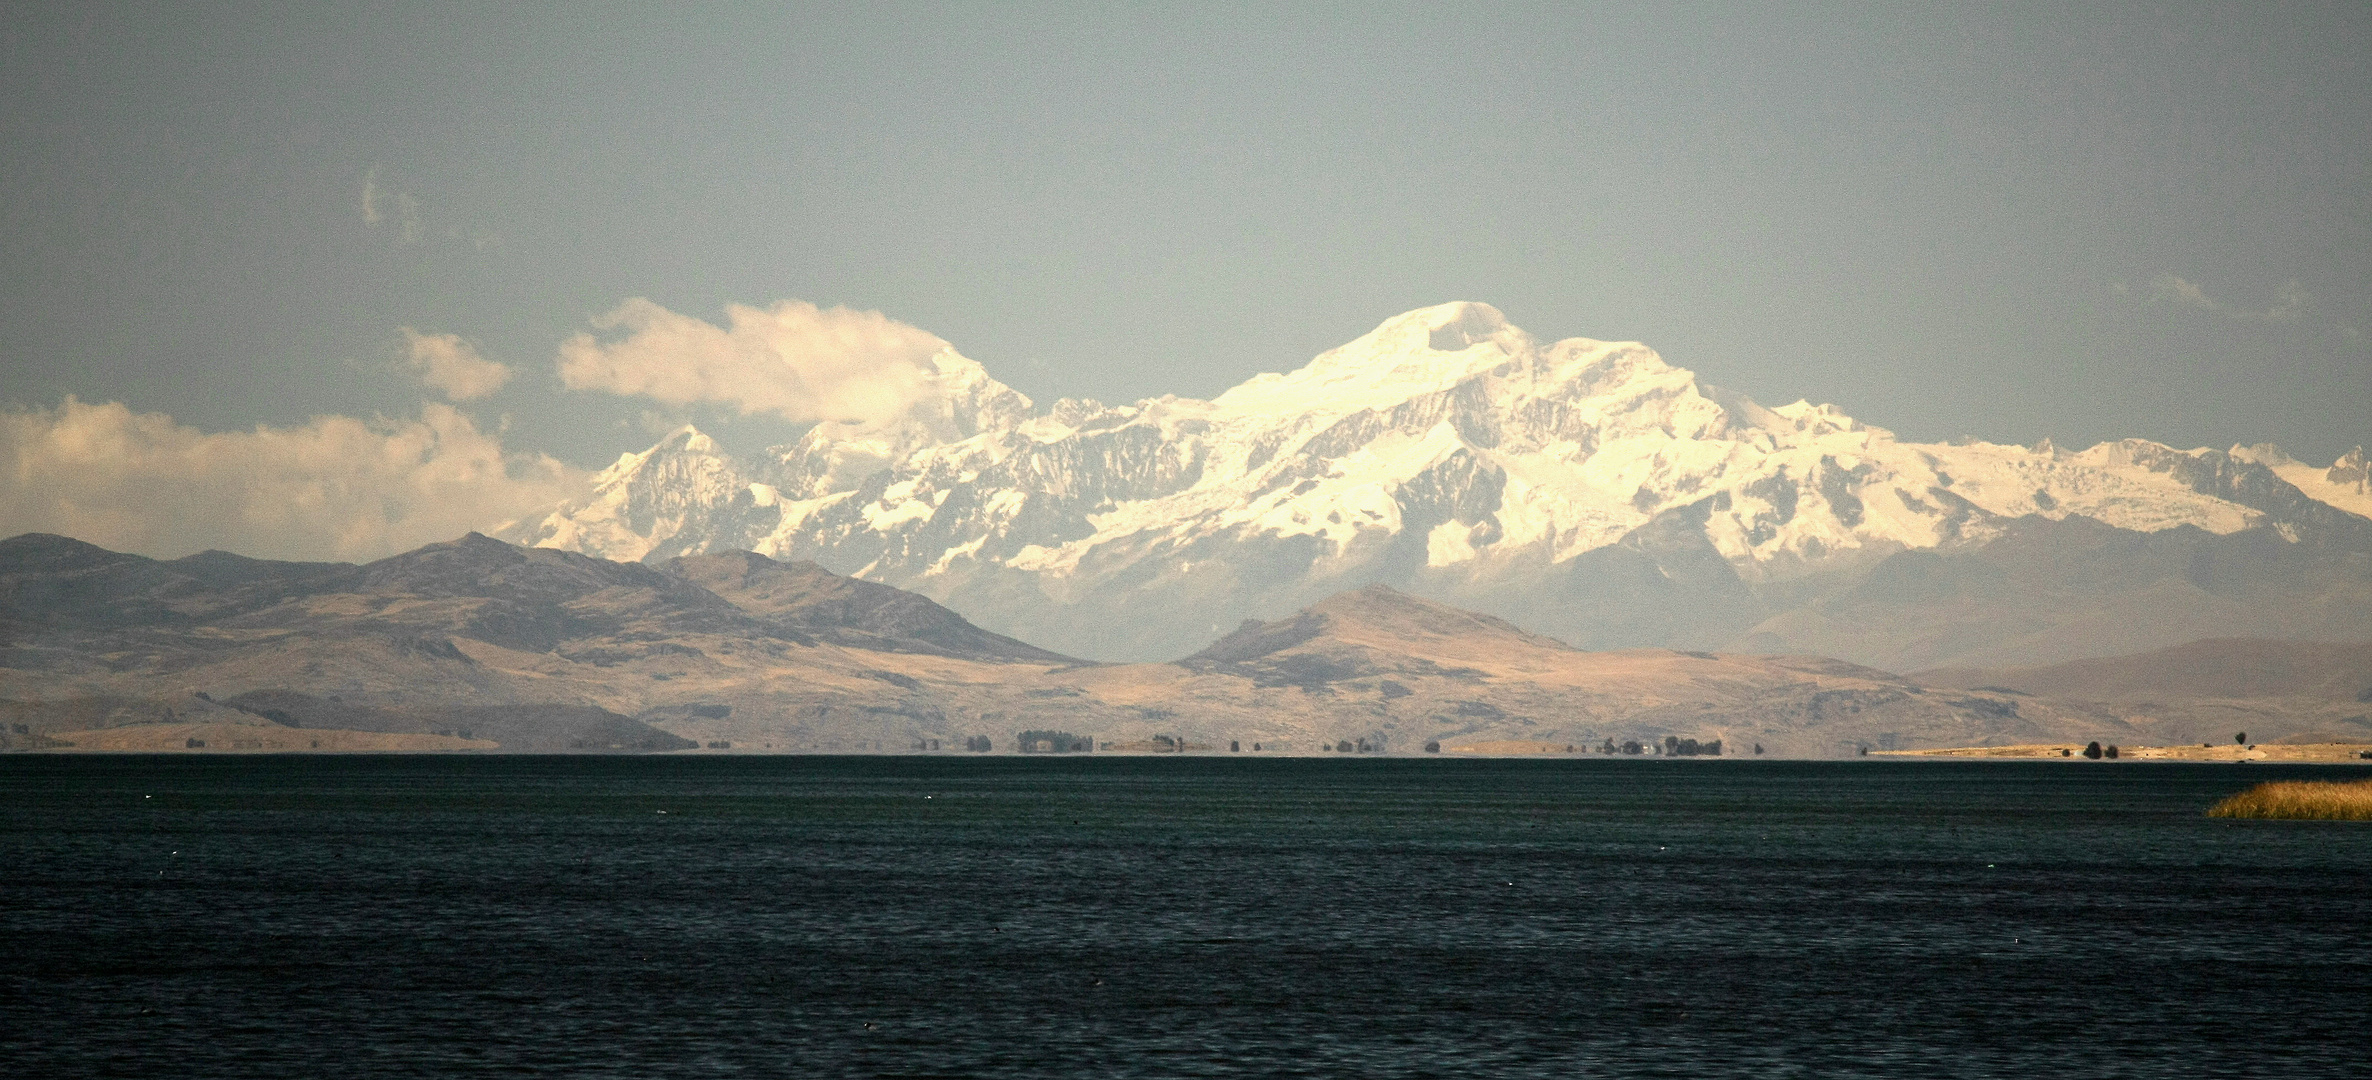 La cordillère des Andes ( 7000 m )et la lac Titicaca( 4200 m )